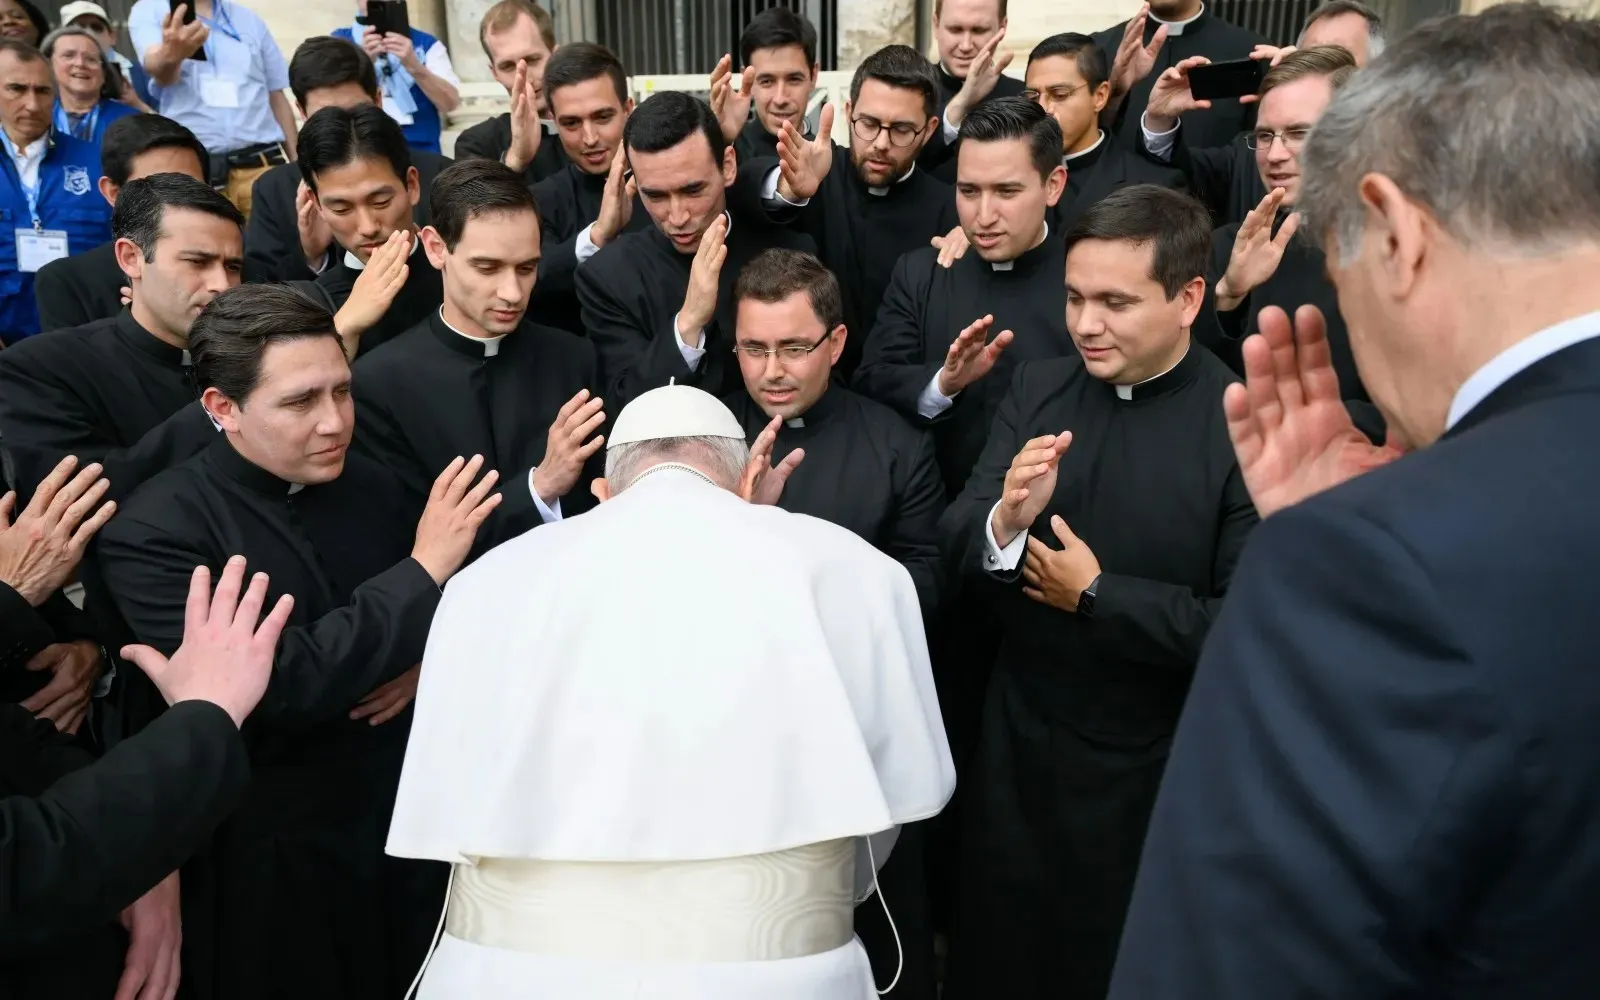 Imagen referencial del Papa Francisco recibiendo la bendición de varis sacerdotes tras una Audiencia General.?w=200&h=150